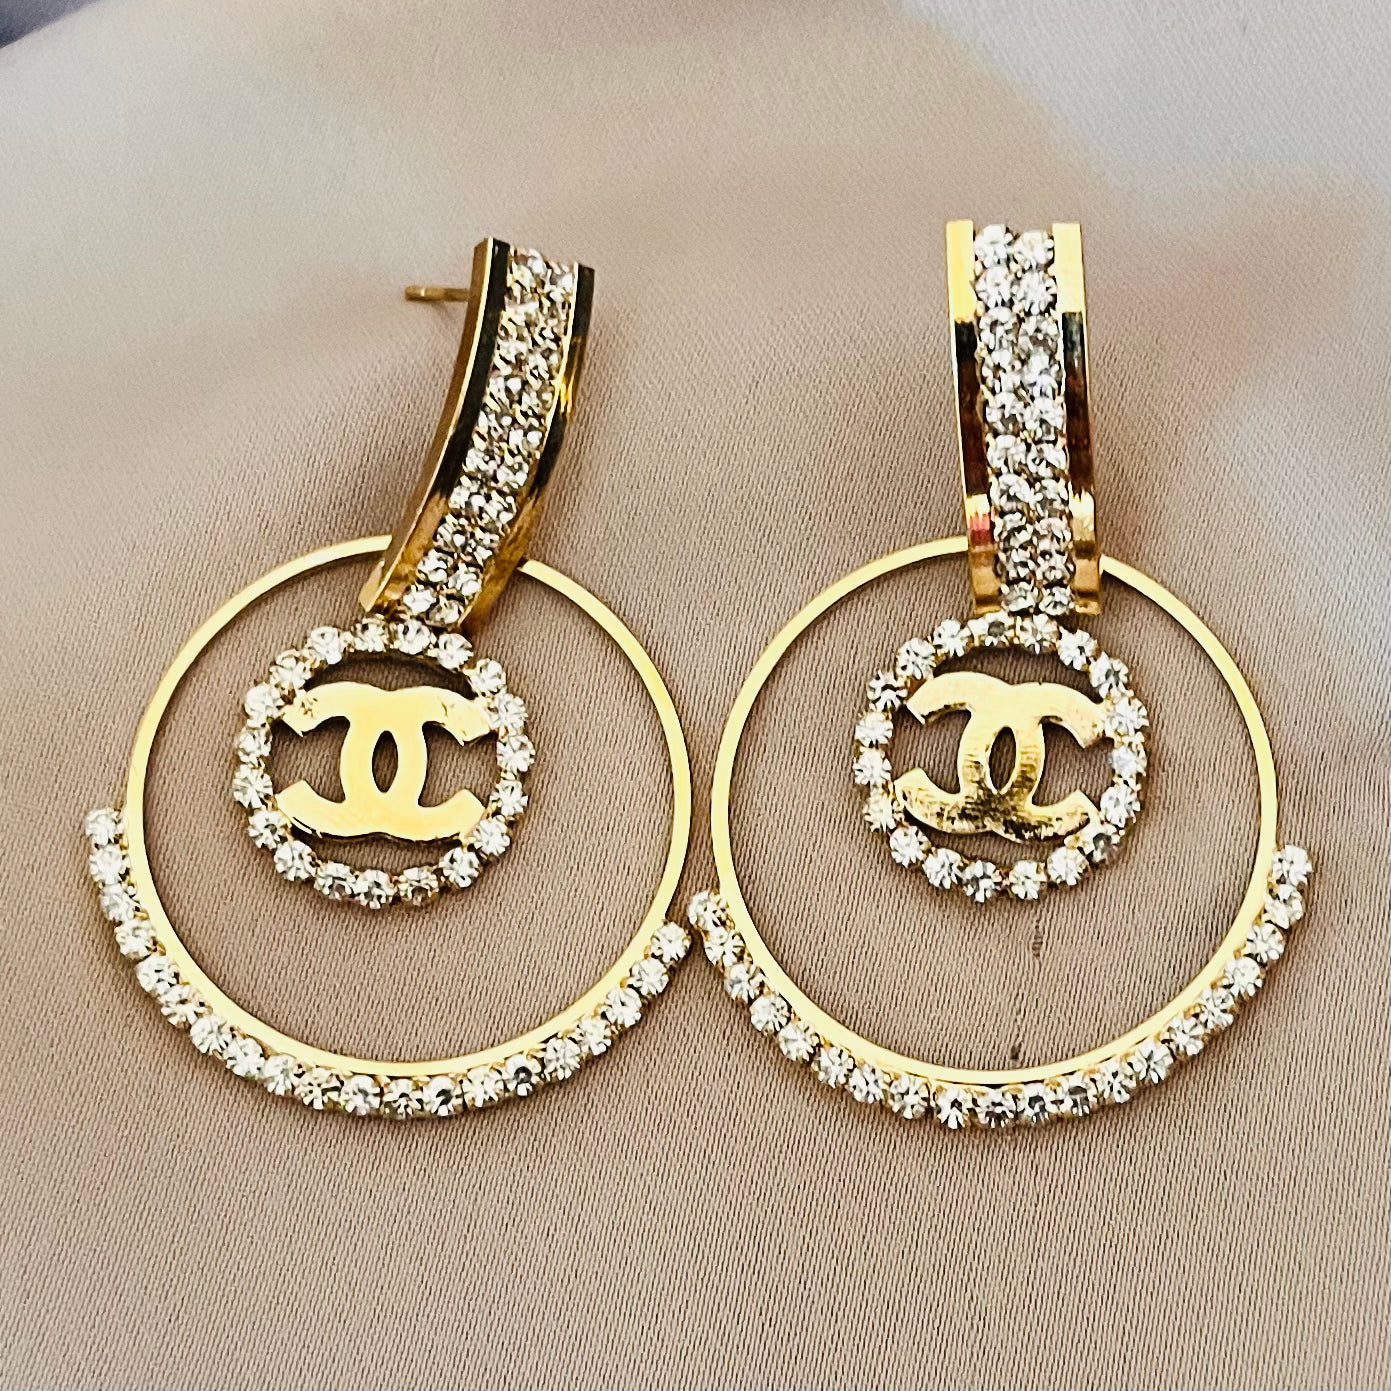 Chanel Style Earrings